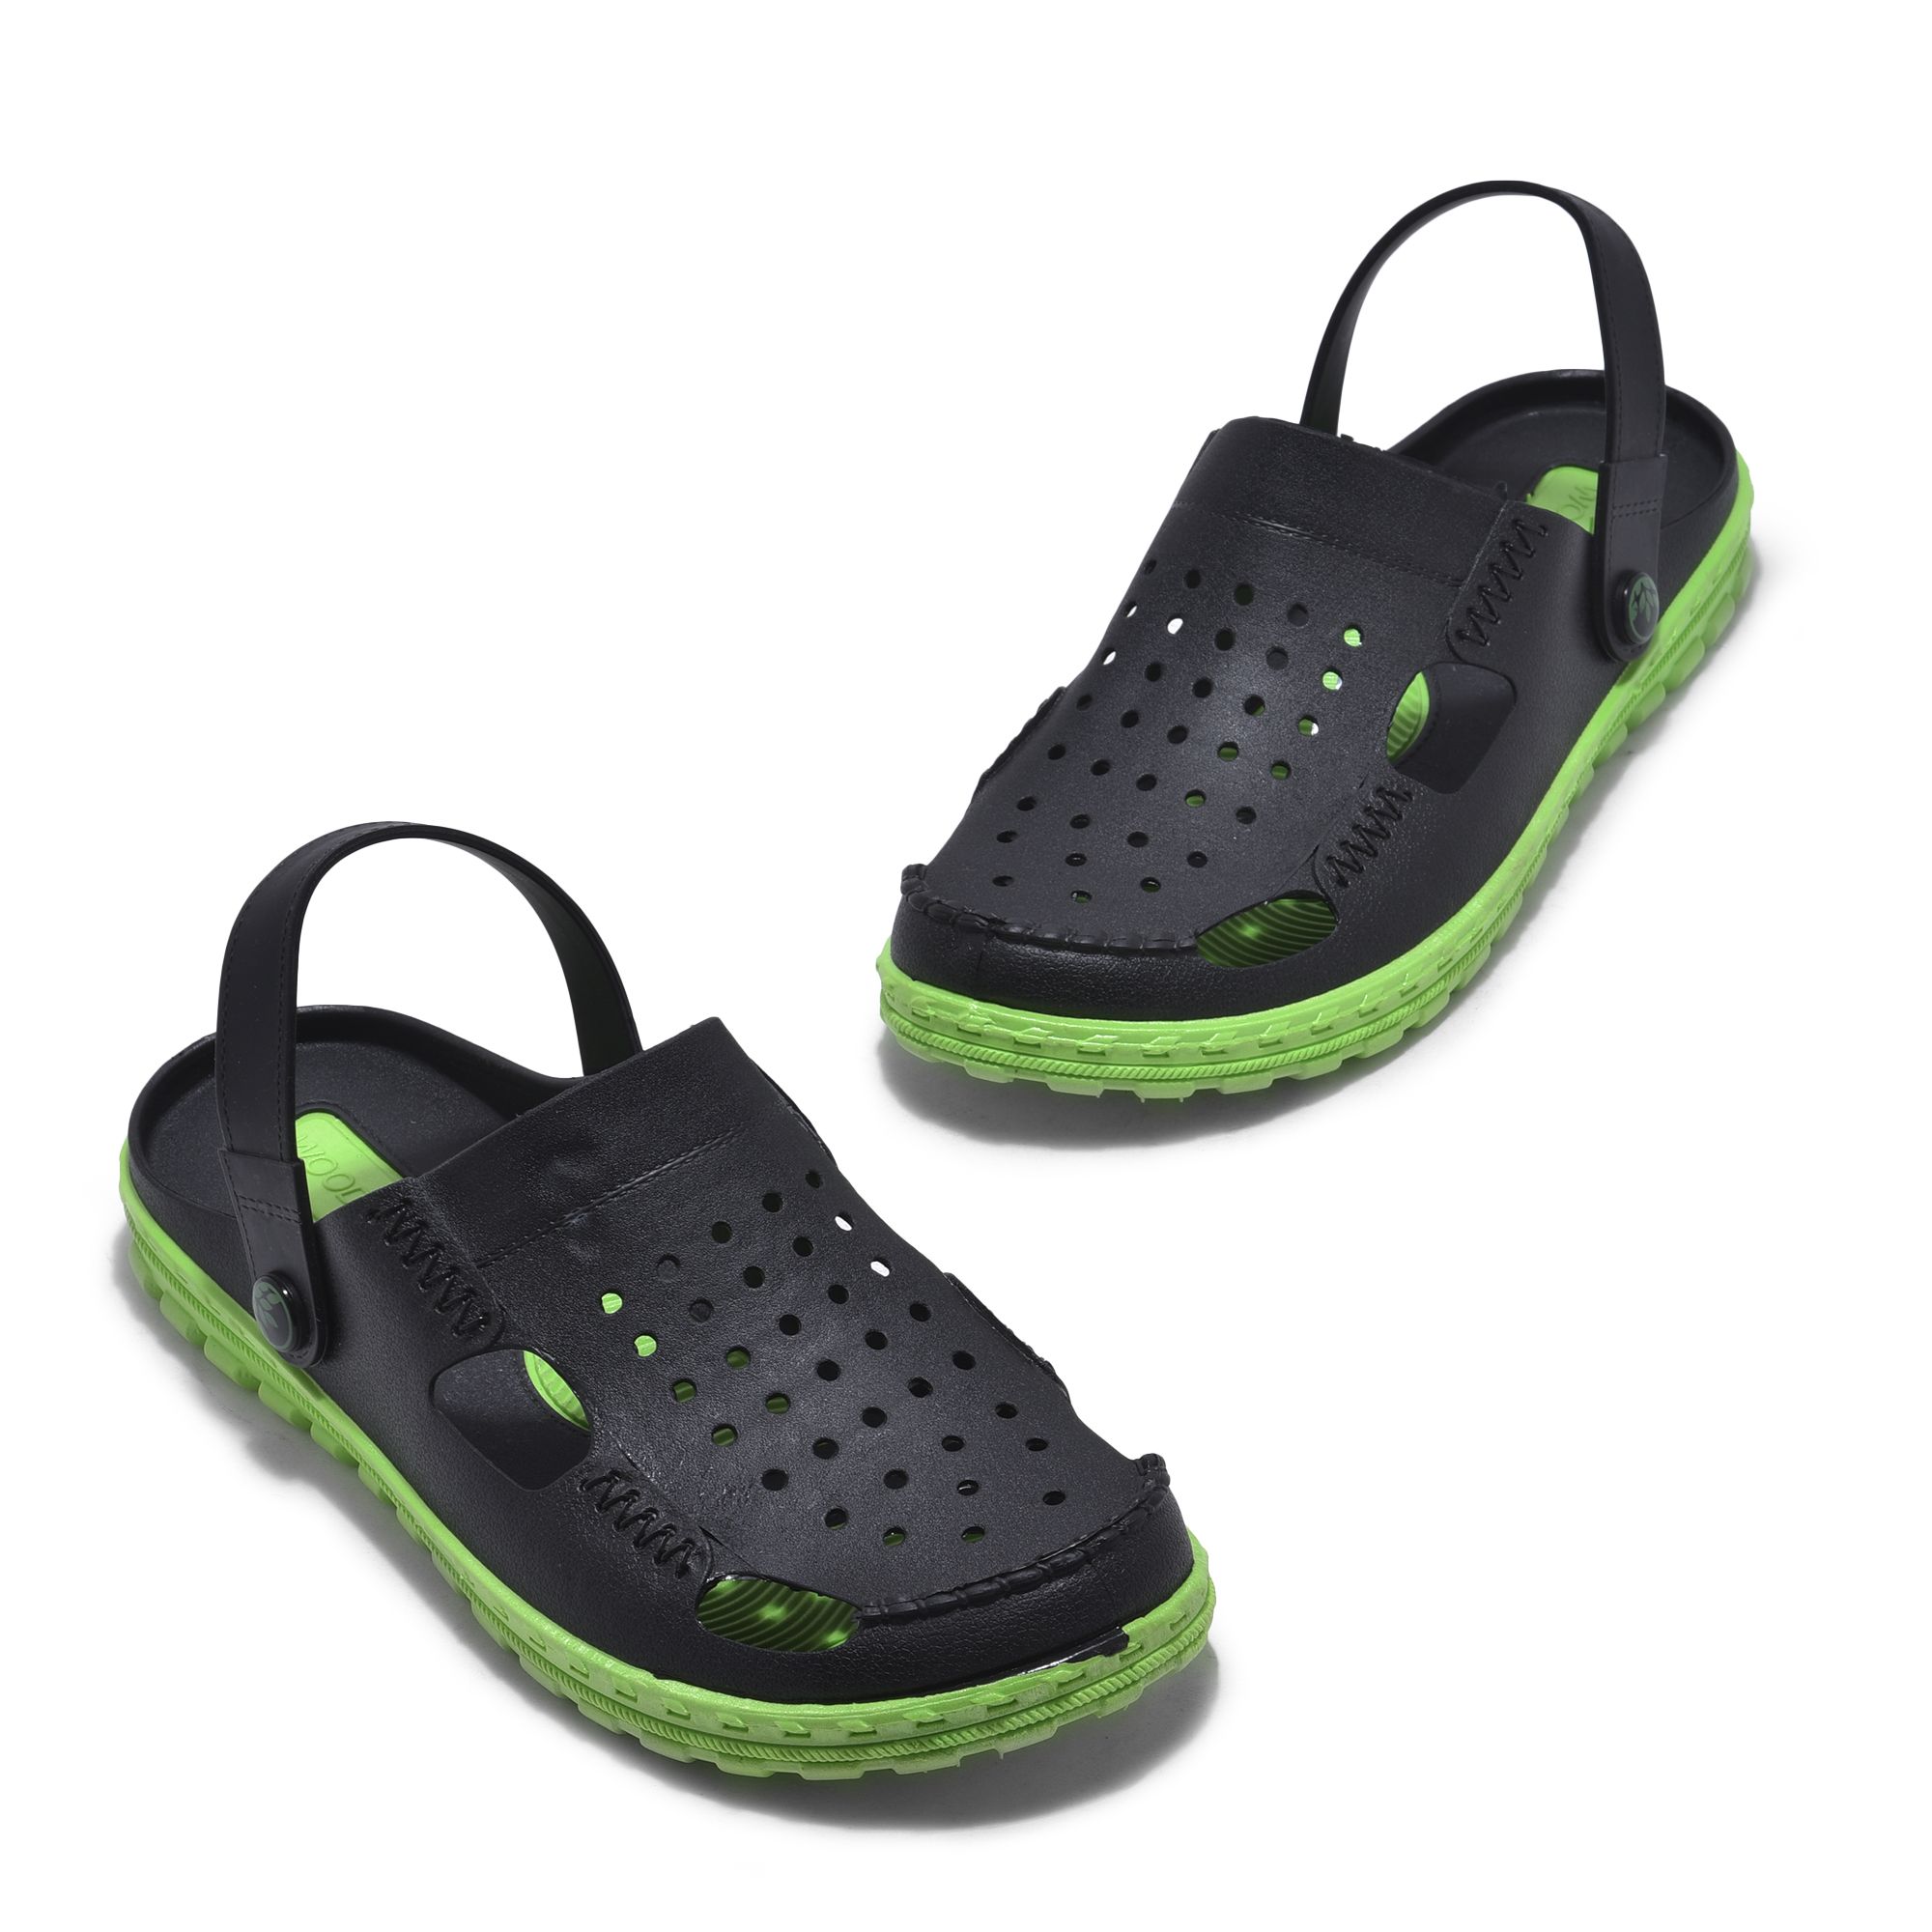 Woodland Green Sandals For Men